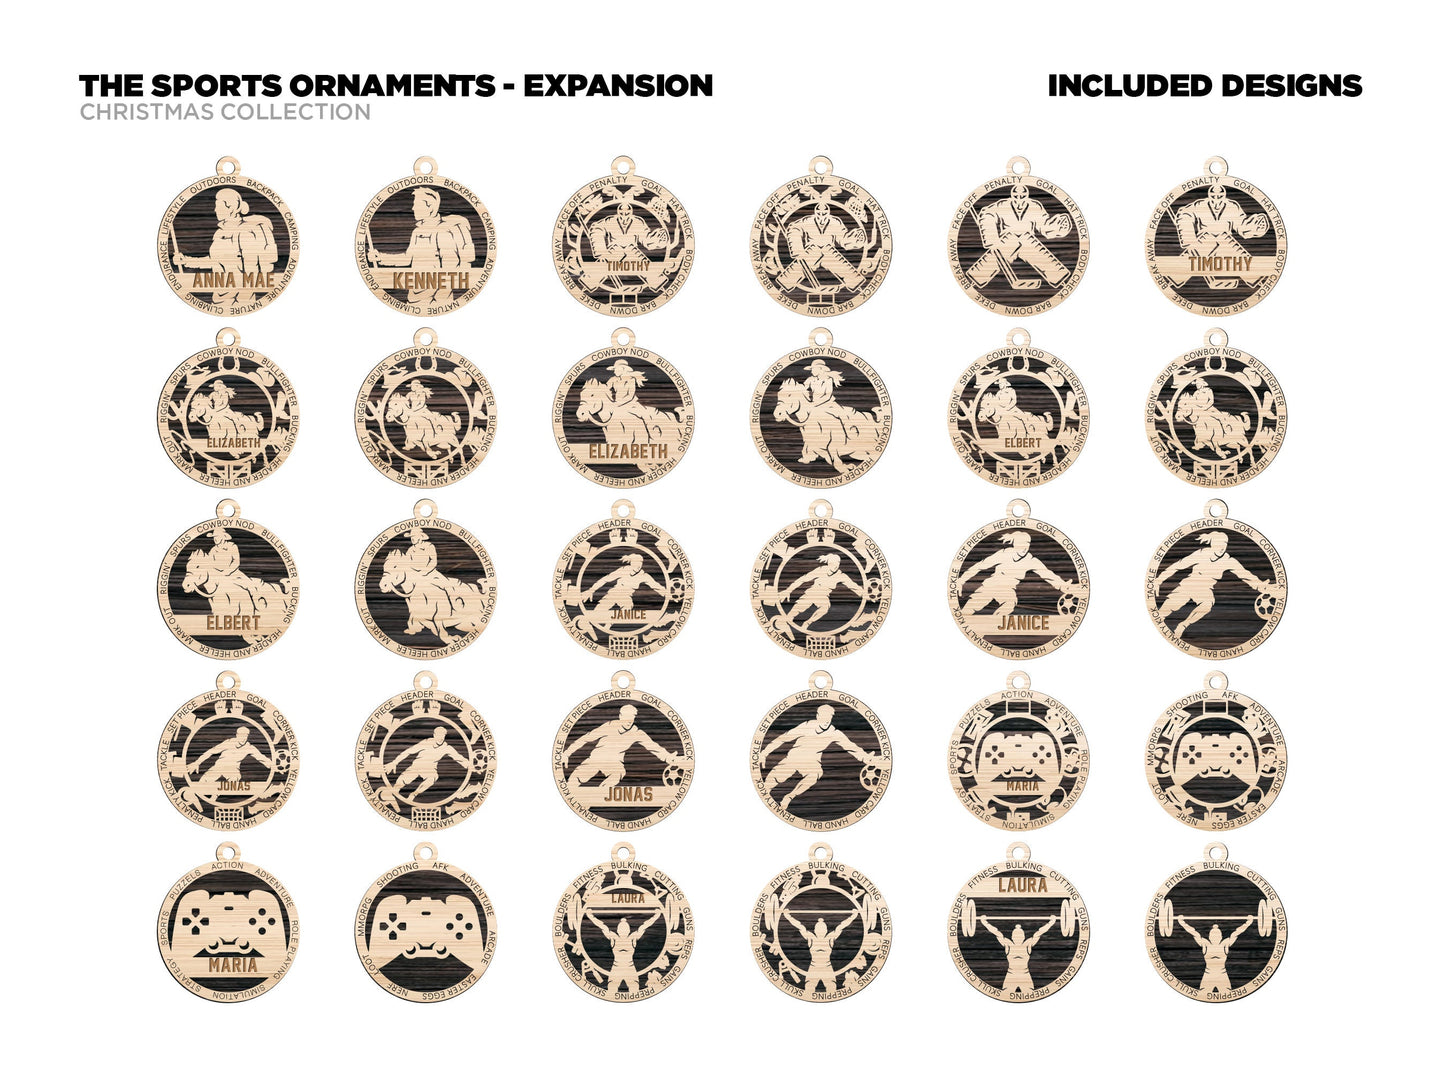 Stadium Series Ornament Expansion Bundle - 88 Unique designs - SVG, PDF, AI File Download - Sized for Glowforge